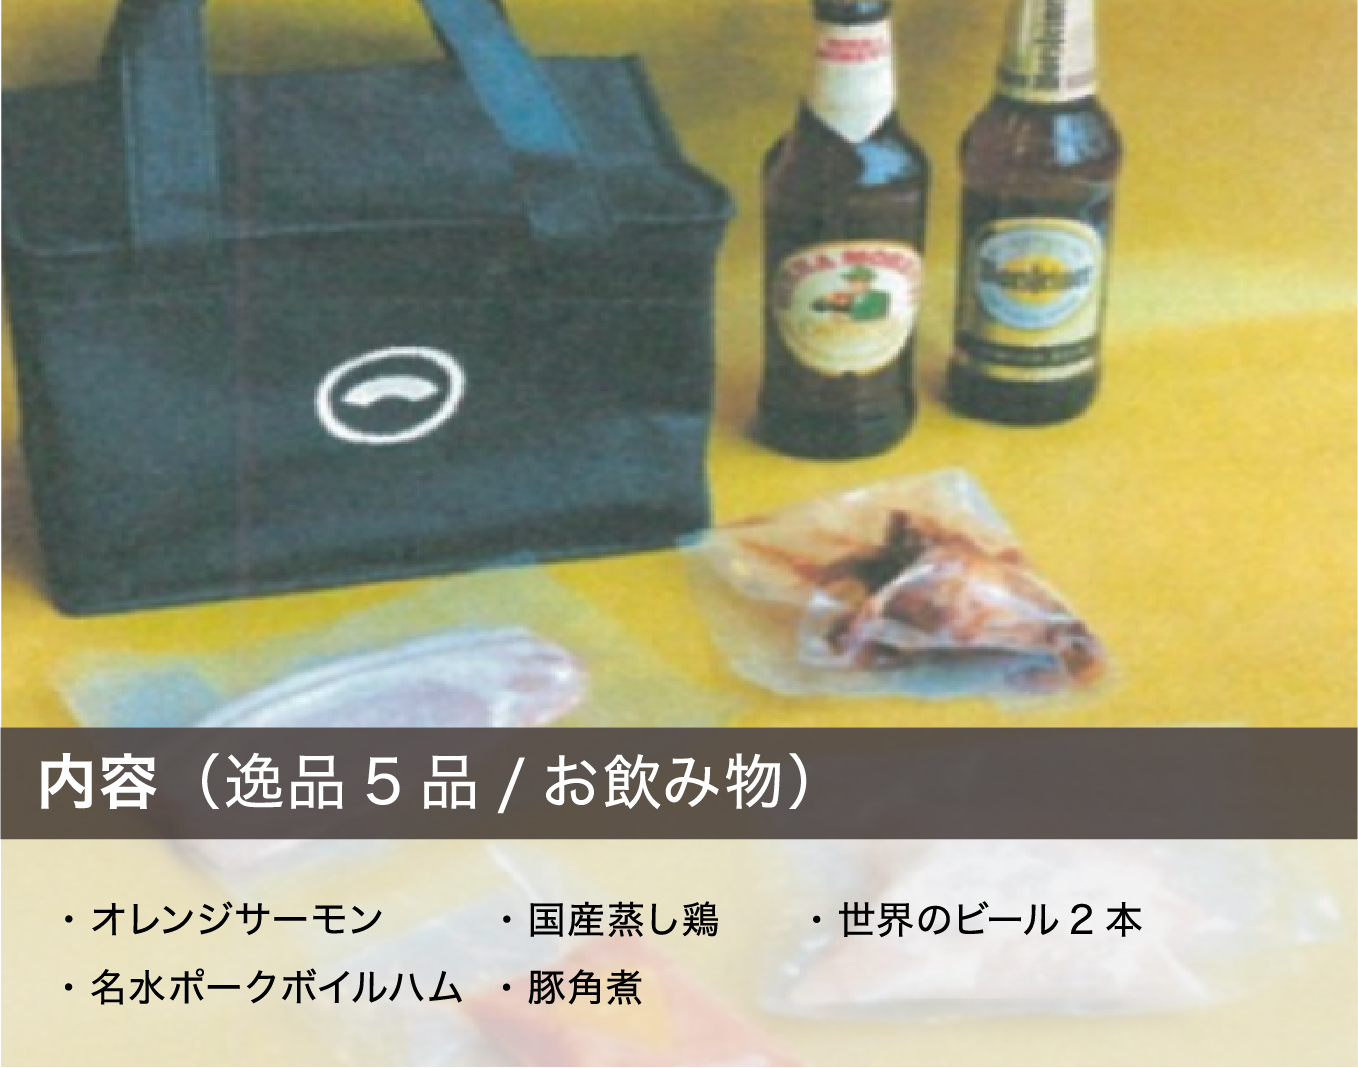 内容（逸品5品/お飲み物）・オレンジサーモン ・名水ポークボイルハム ・国産蒸し鶏 ・豚角煮 ・世界のビール2本